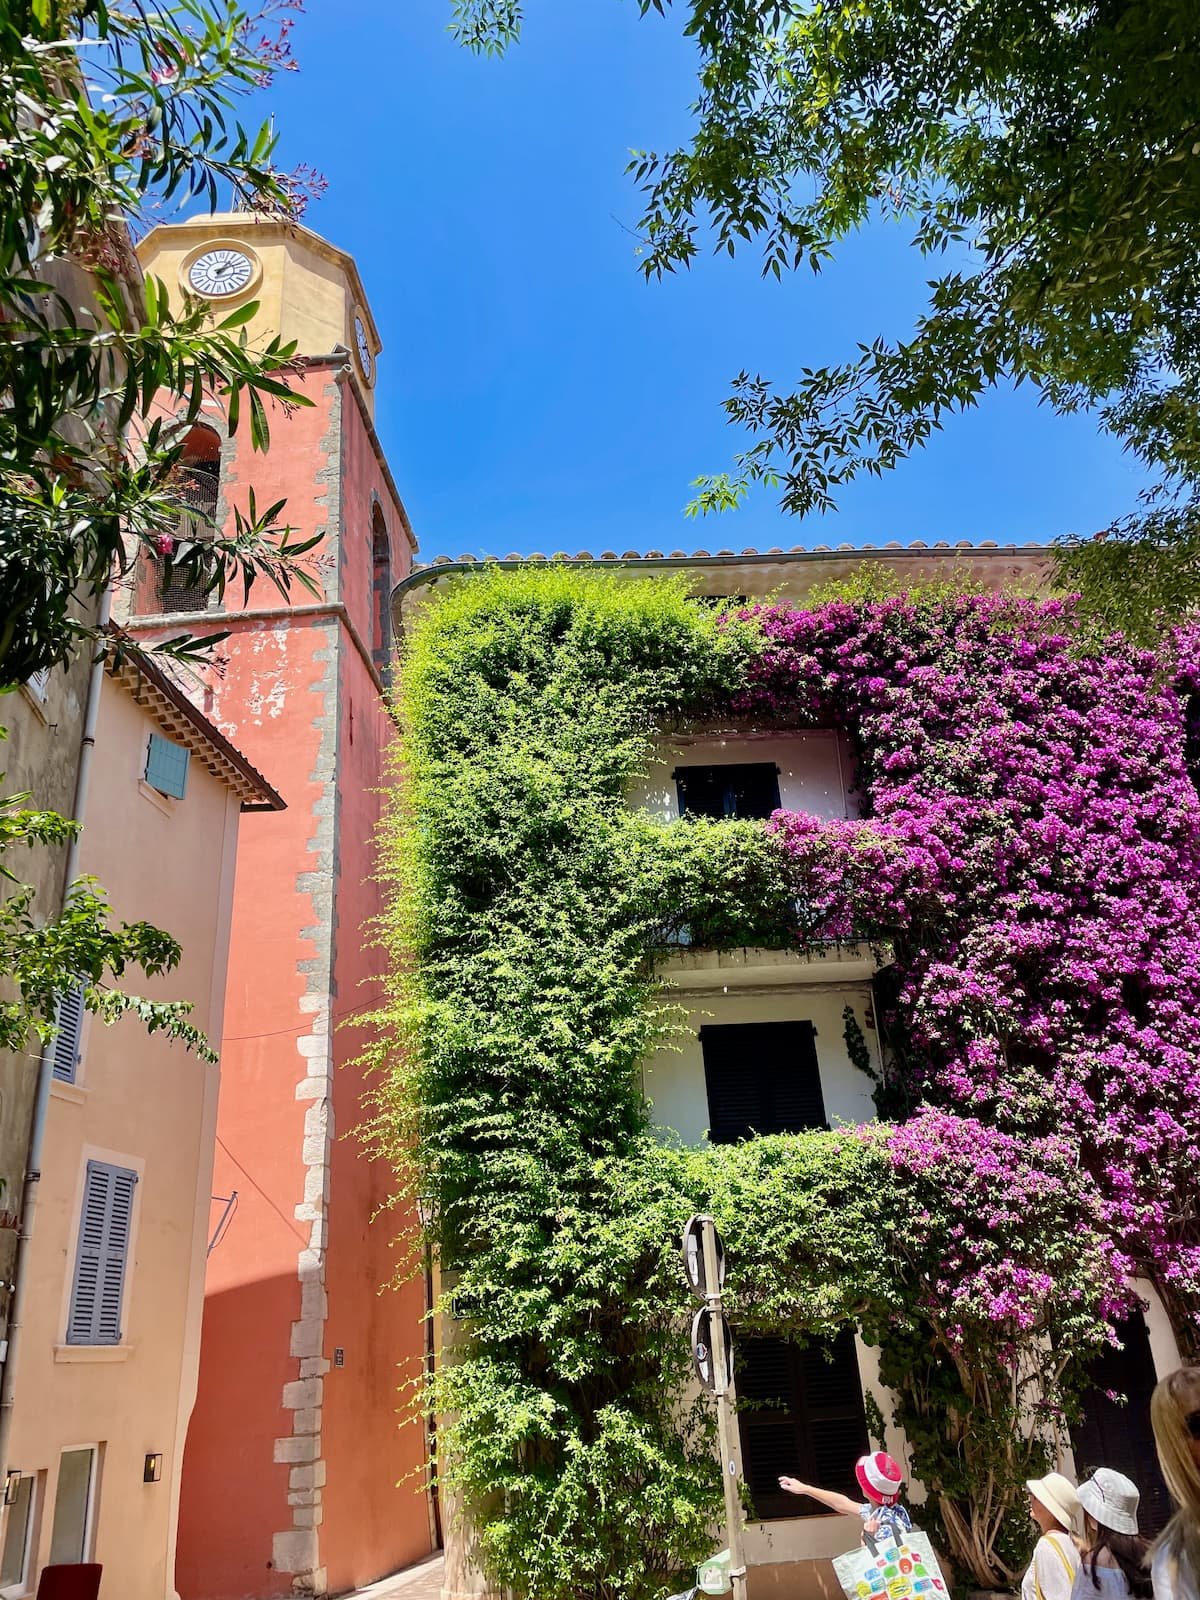 St Tropez flower buildings France